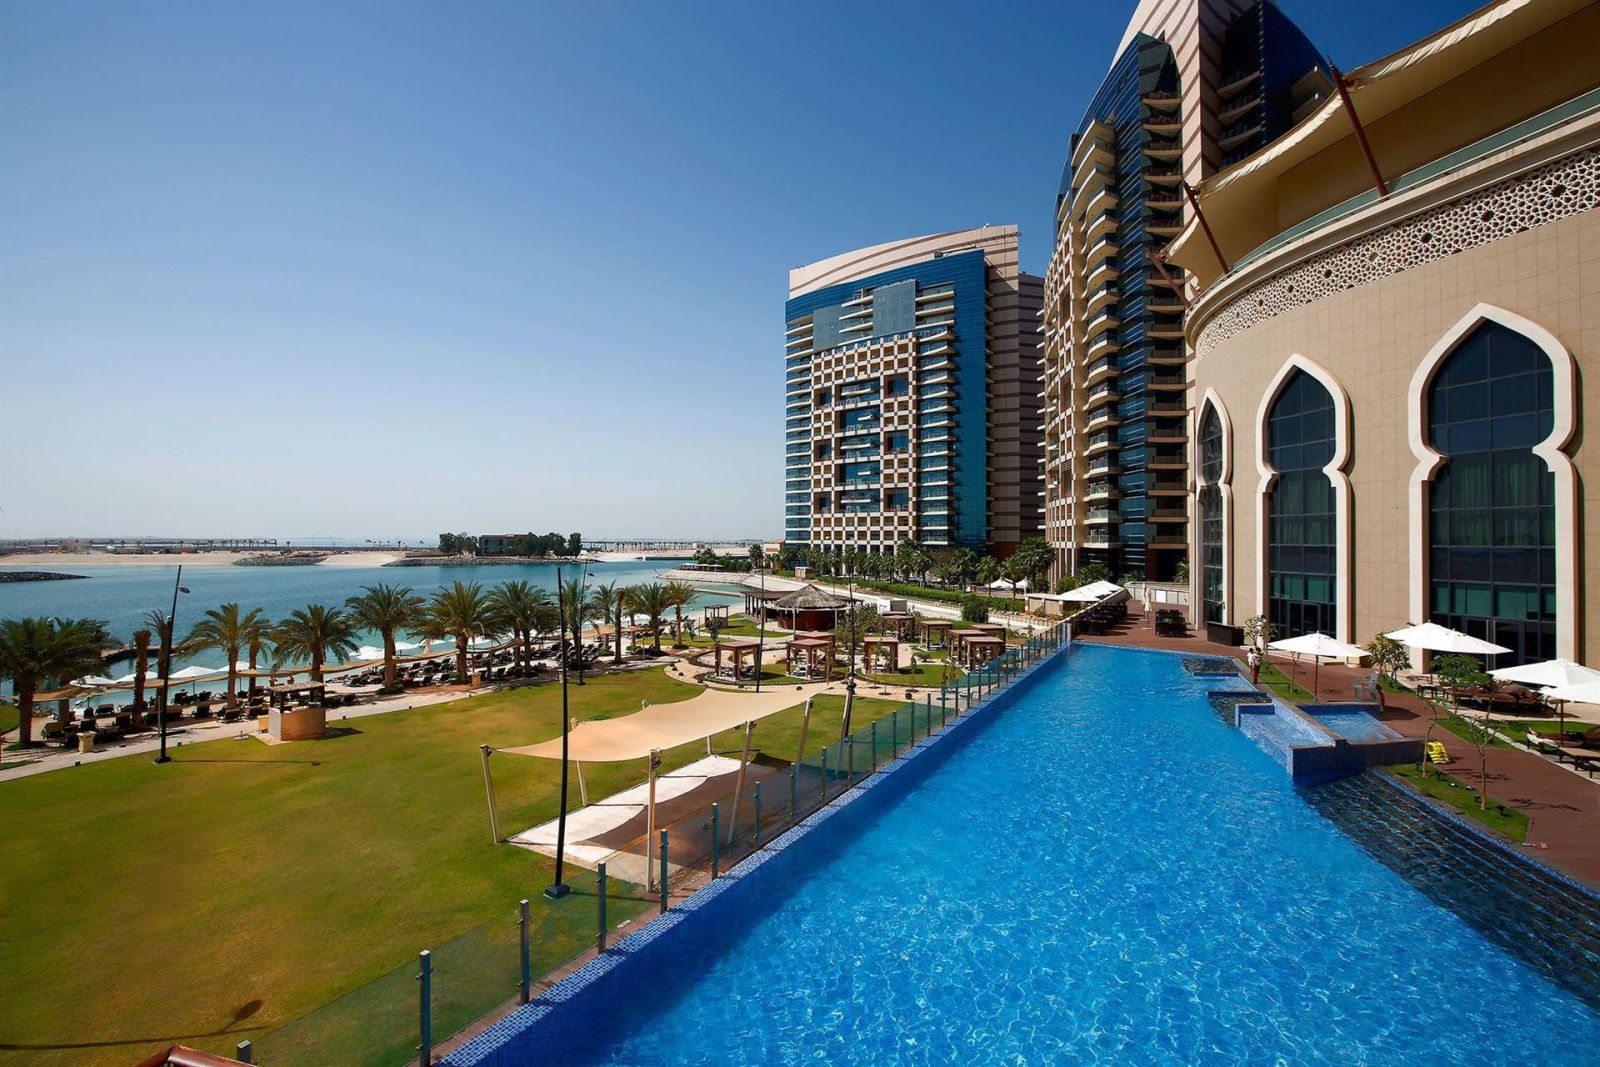 Выбираем тур и отель в Абу-Даби: что посмотреть и где остановиться АбуДаби, также, двоих, ночей, питание, вылет, отель, стиле, большой, расположен, Saadiyat, советуем, уровень, набережной, можно, дворец, самой, пляже, эмирата, достопримечательностей